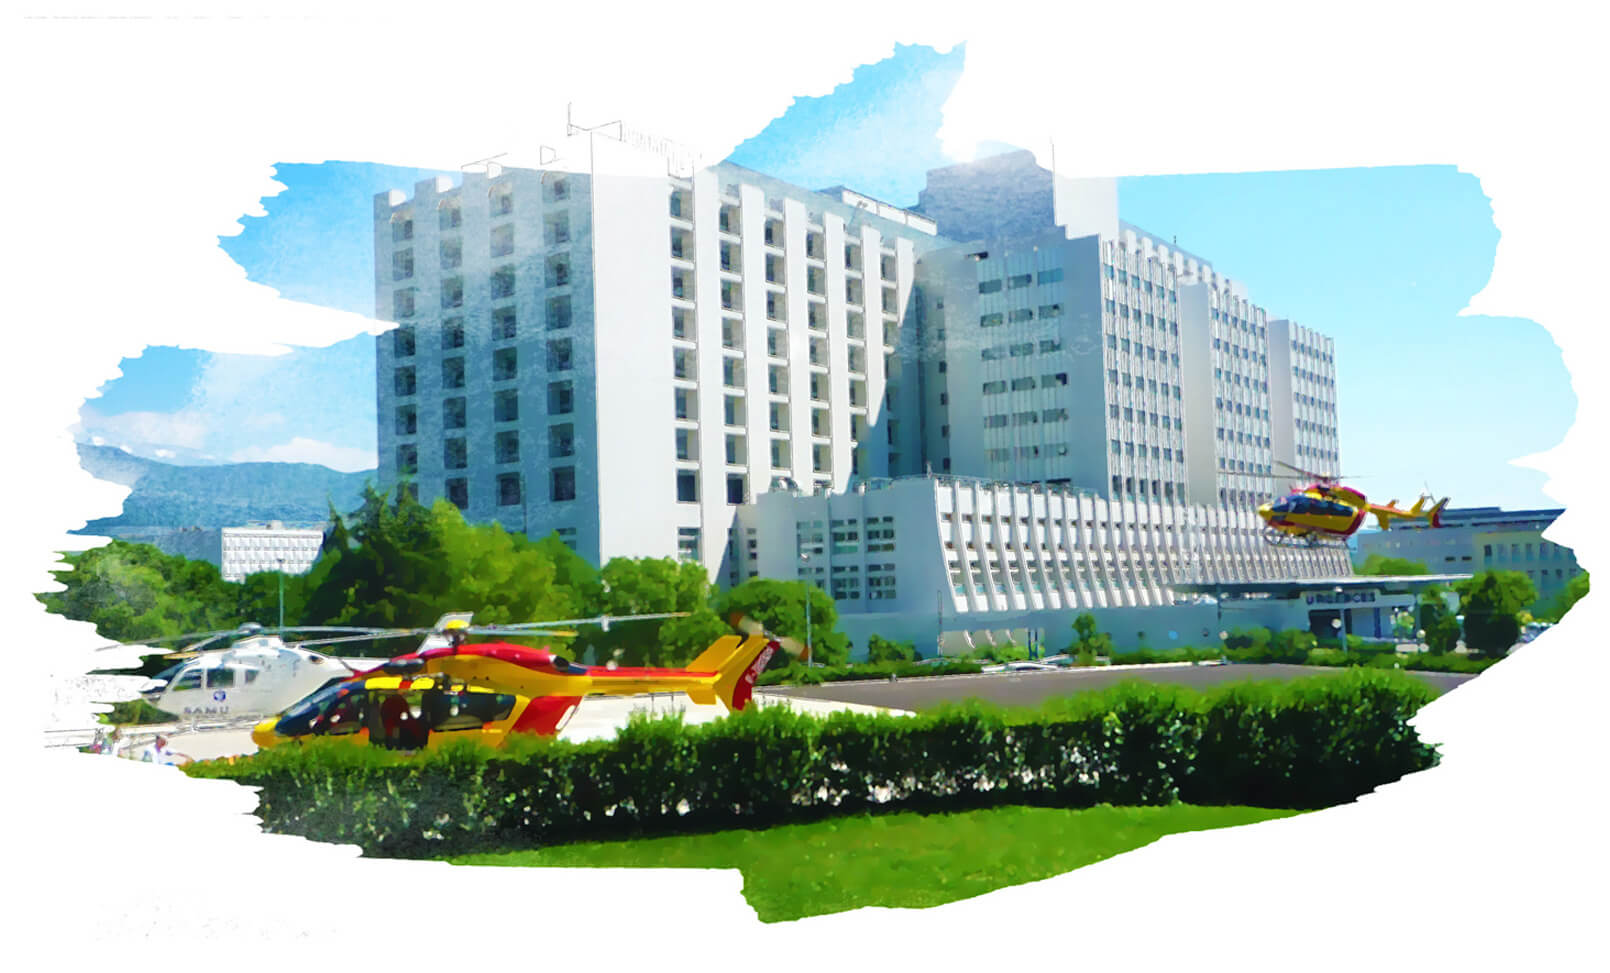 Grenoble hospital